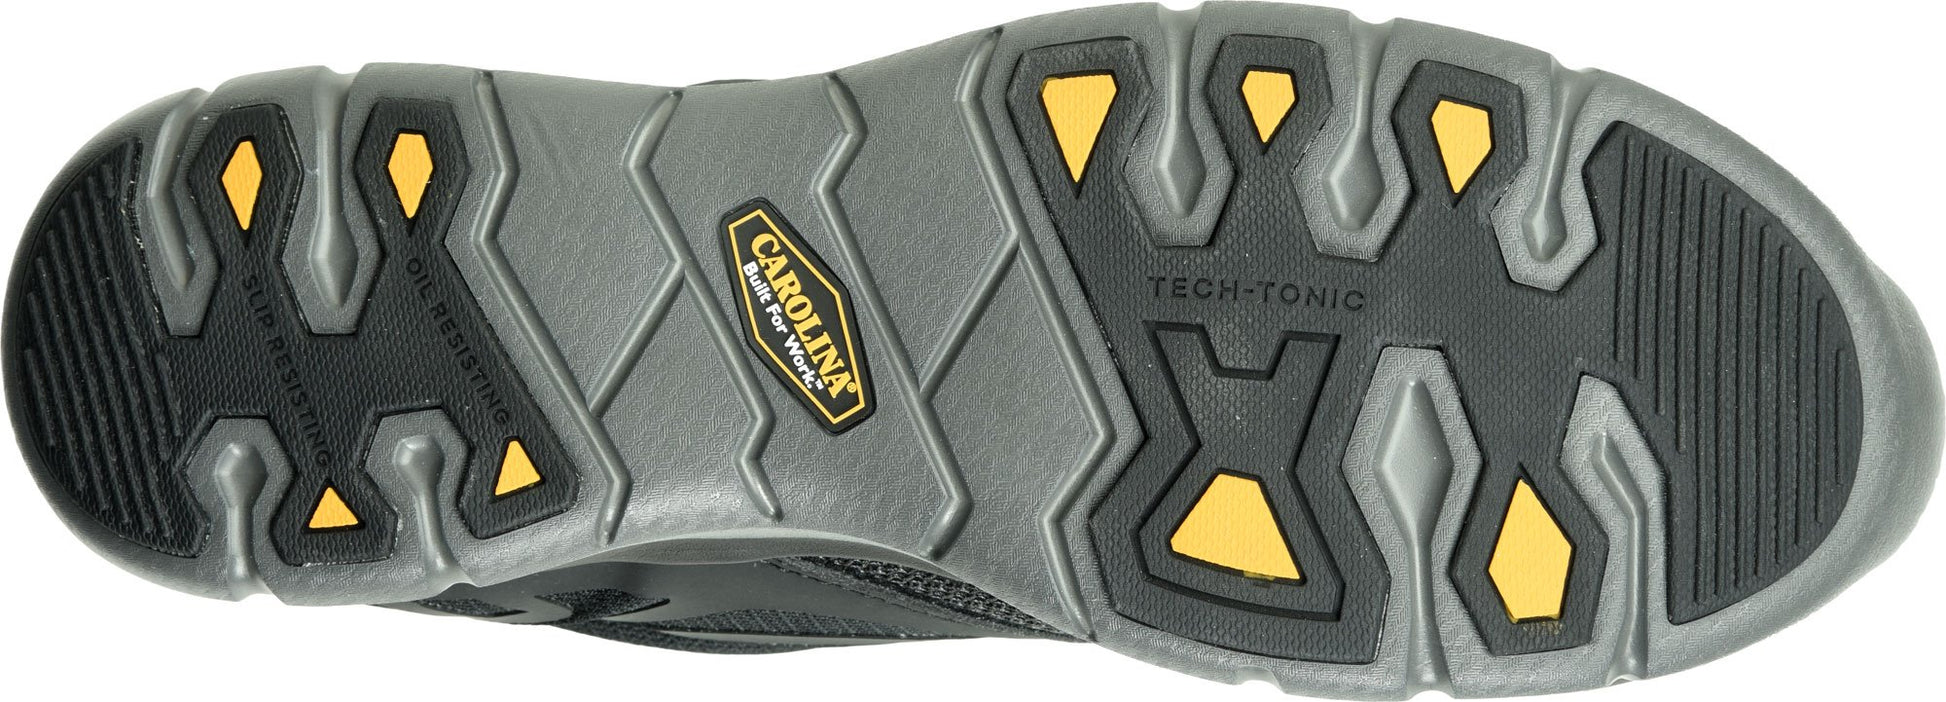 CA1902 Carolina Low Top Aluminum Toe Sneaker (Black)